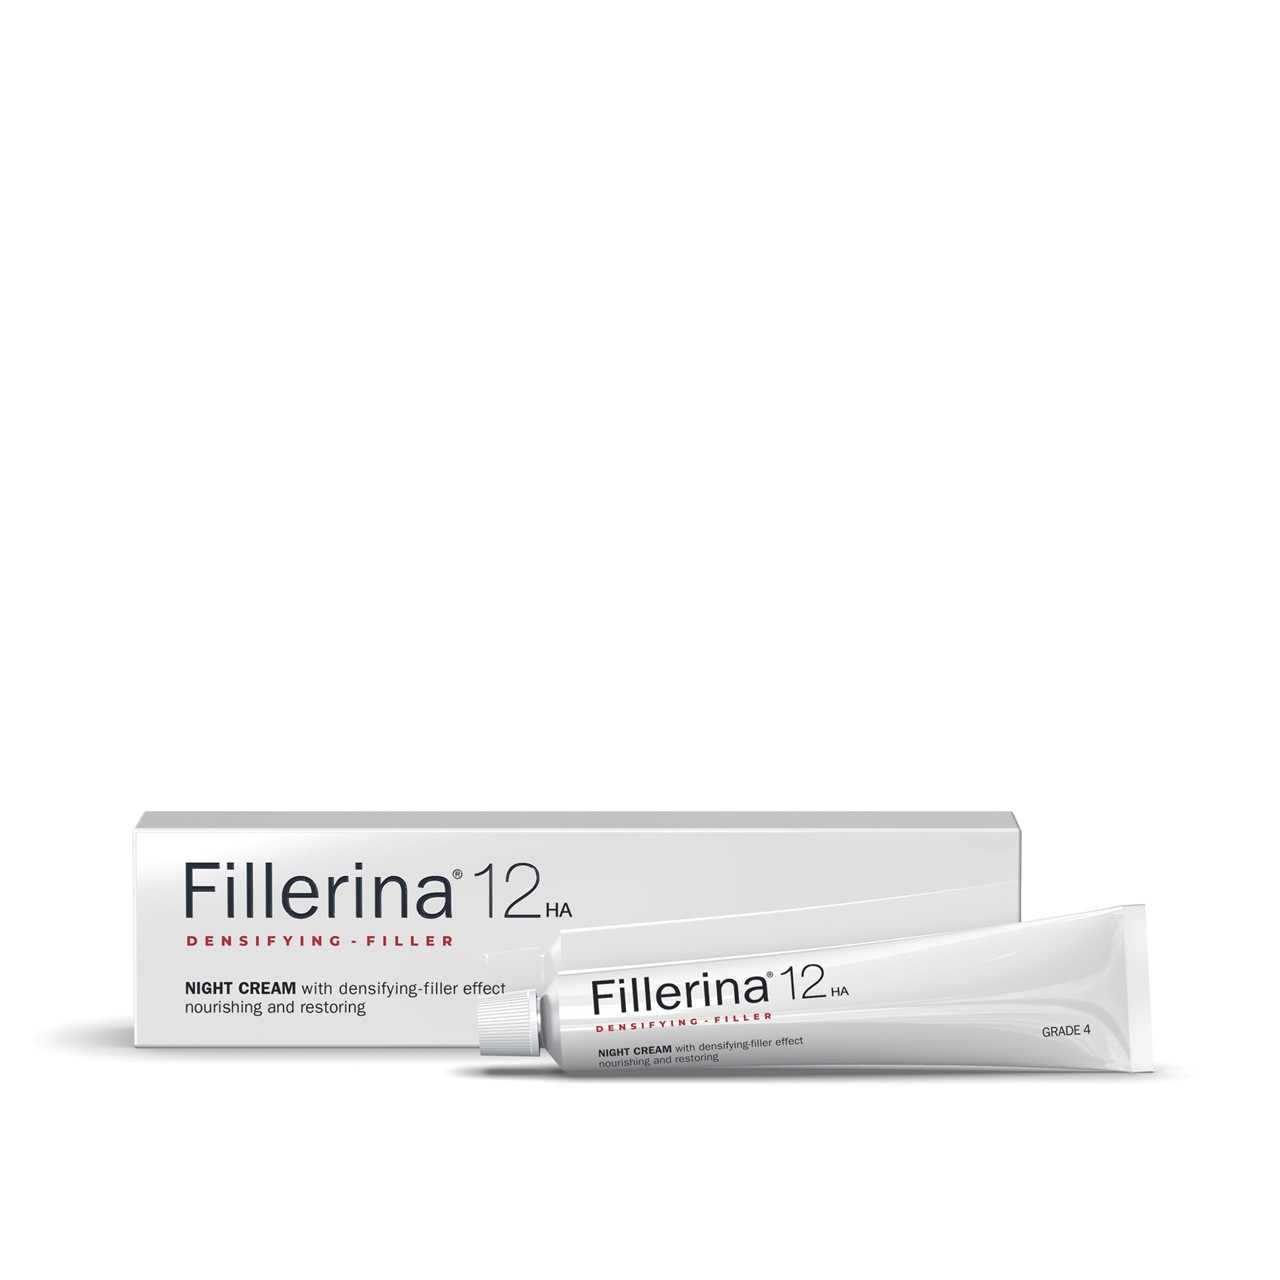 Fillerina 12HA Densifying-Filler Night Cream Grade 4 50ml (1.69fl oz)